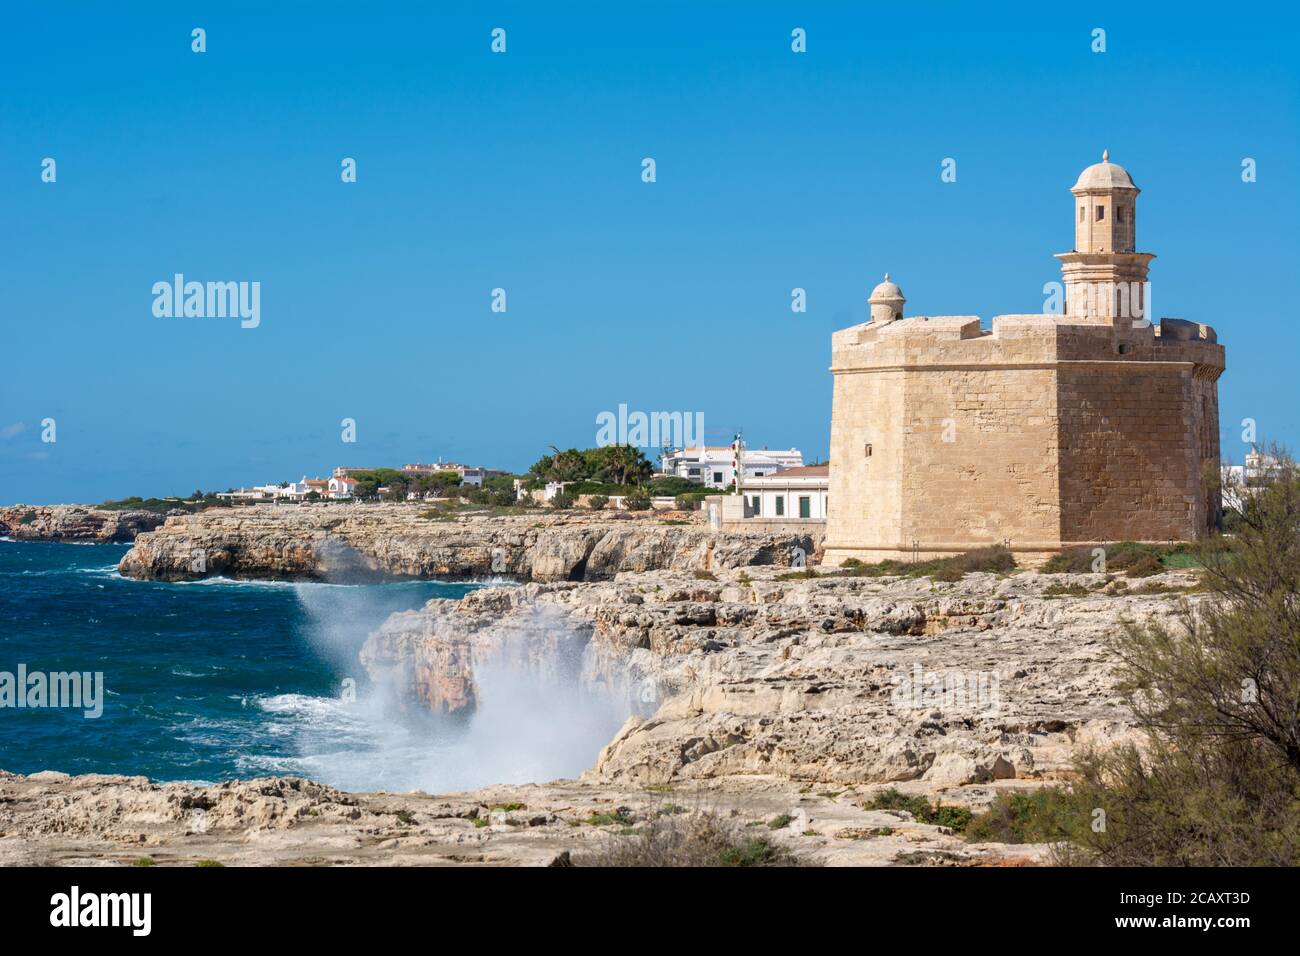 Costa rocosa del oeste de Menorca con Castell de Sant Nicolau. Puerto de Ciutadella. Menorca, España Foto de stock